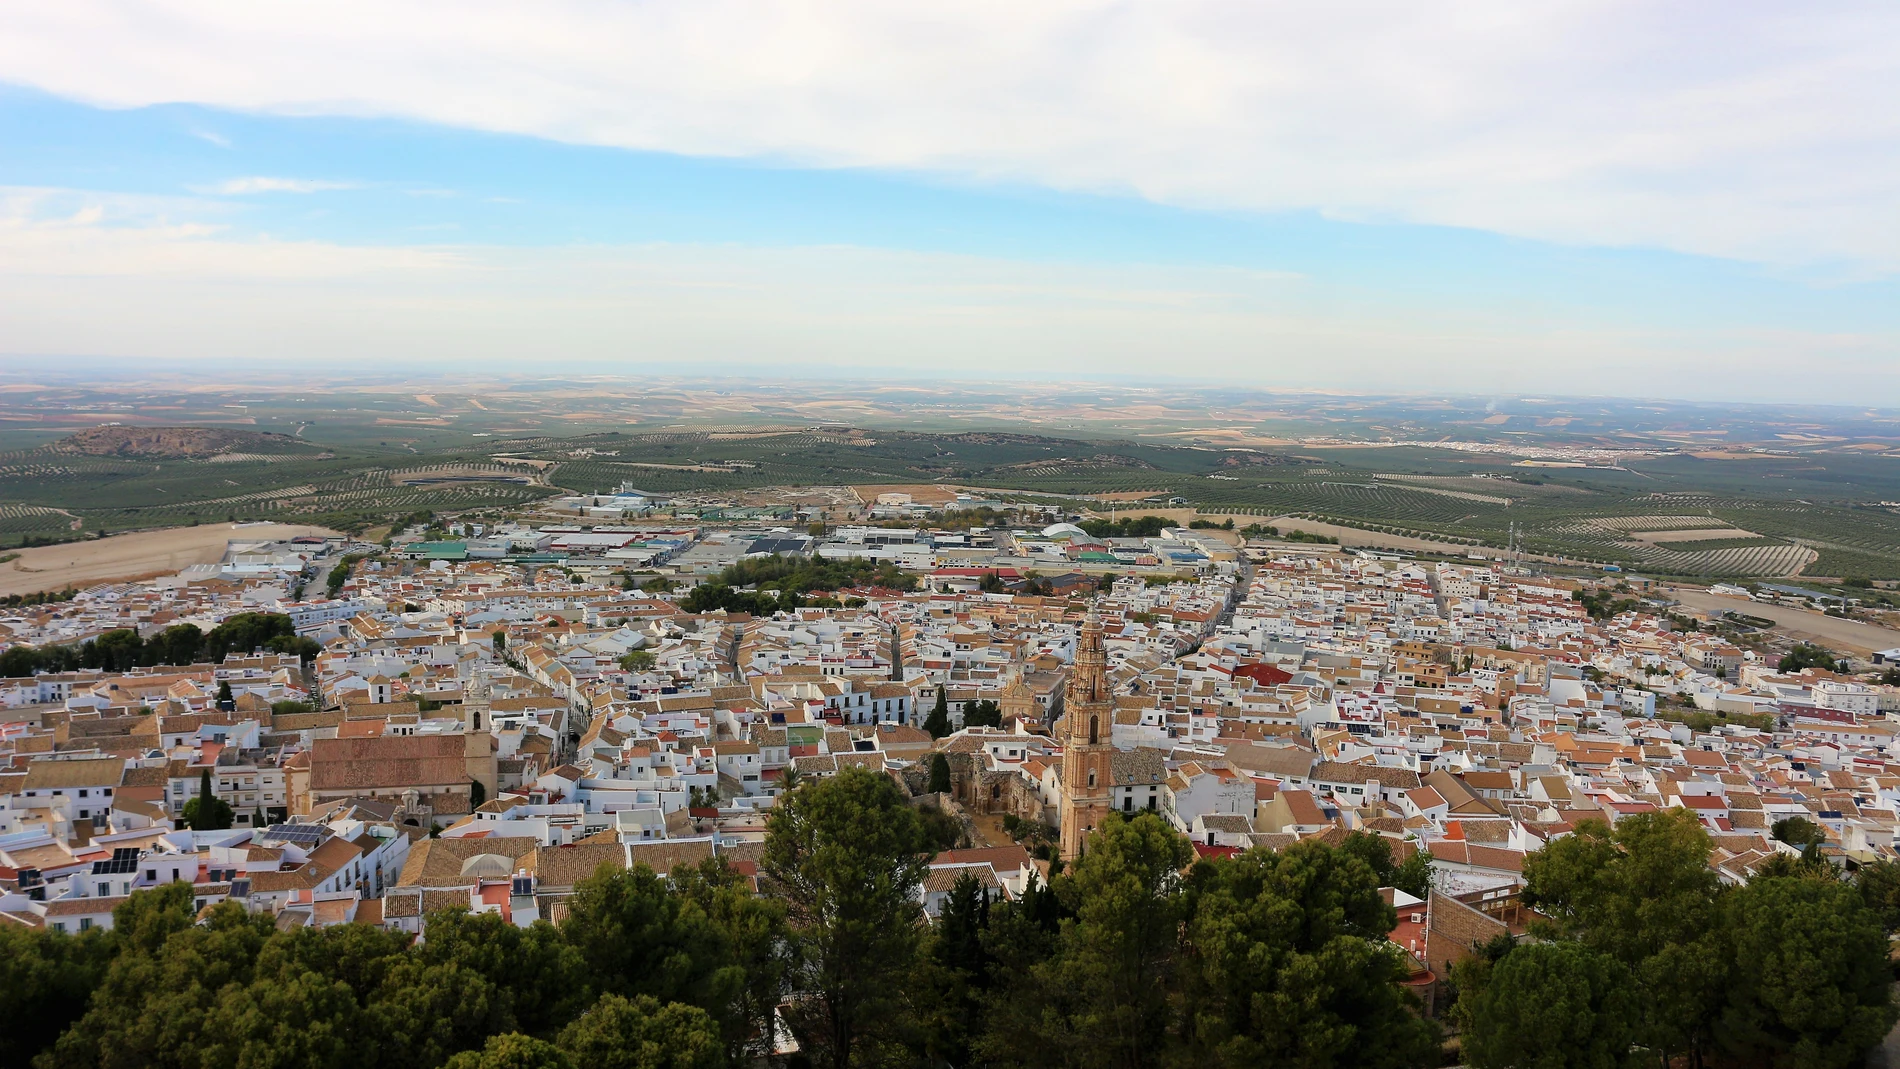 Espectacular vista de la ciudad de Estepa desde el Cerro de San Cristóbal